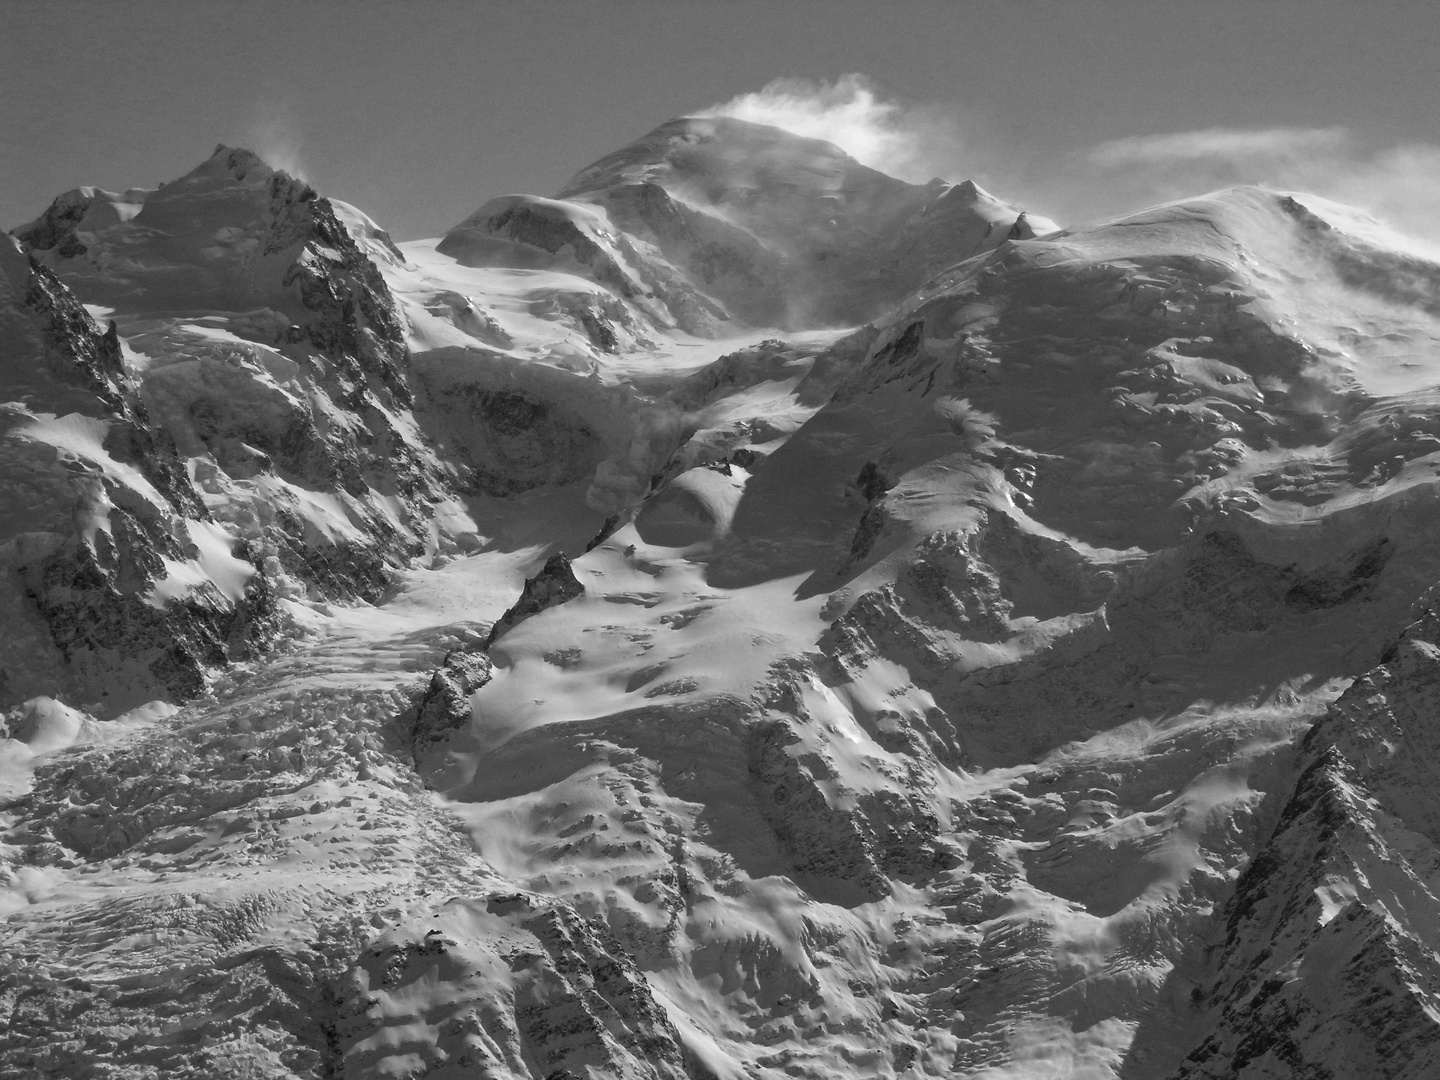 Mont-Blanc en n&b